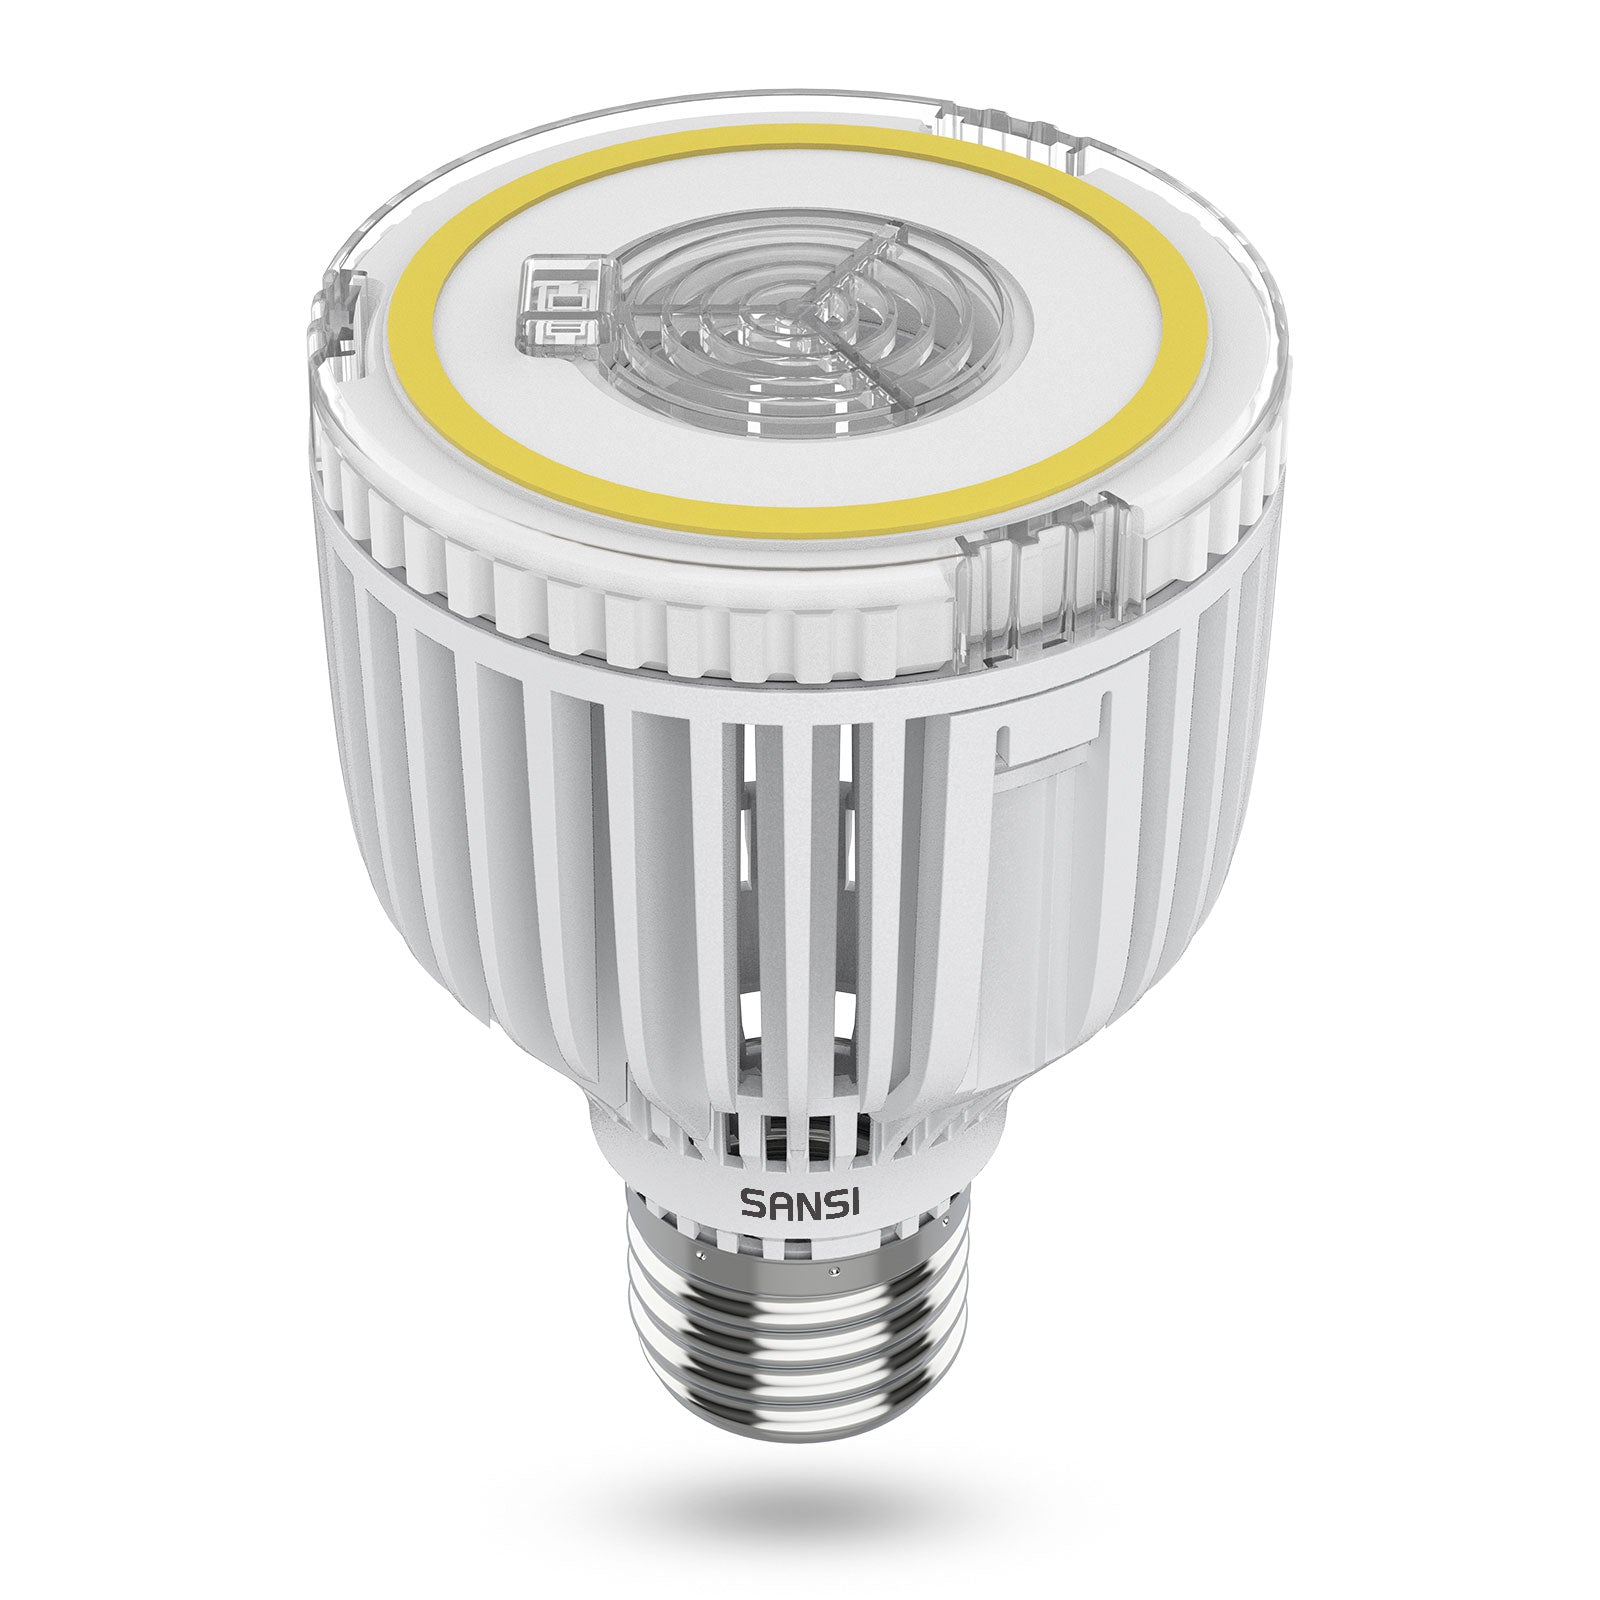 A19 40W led light bulb, 5000K daylight